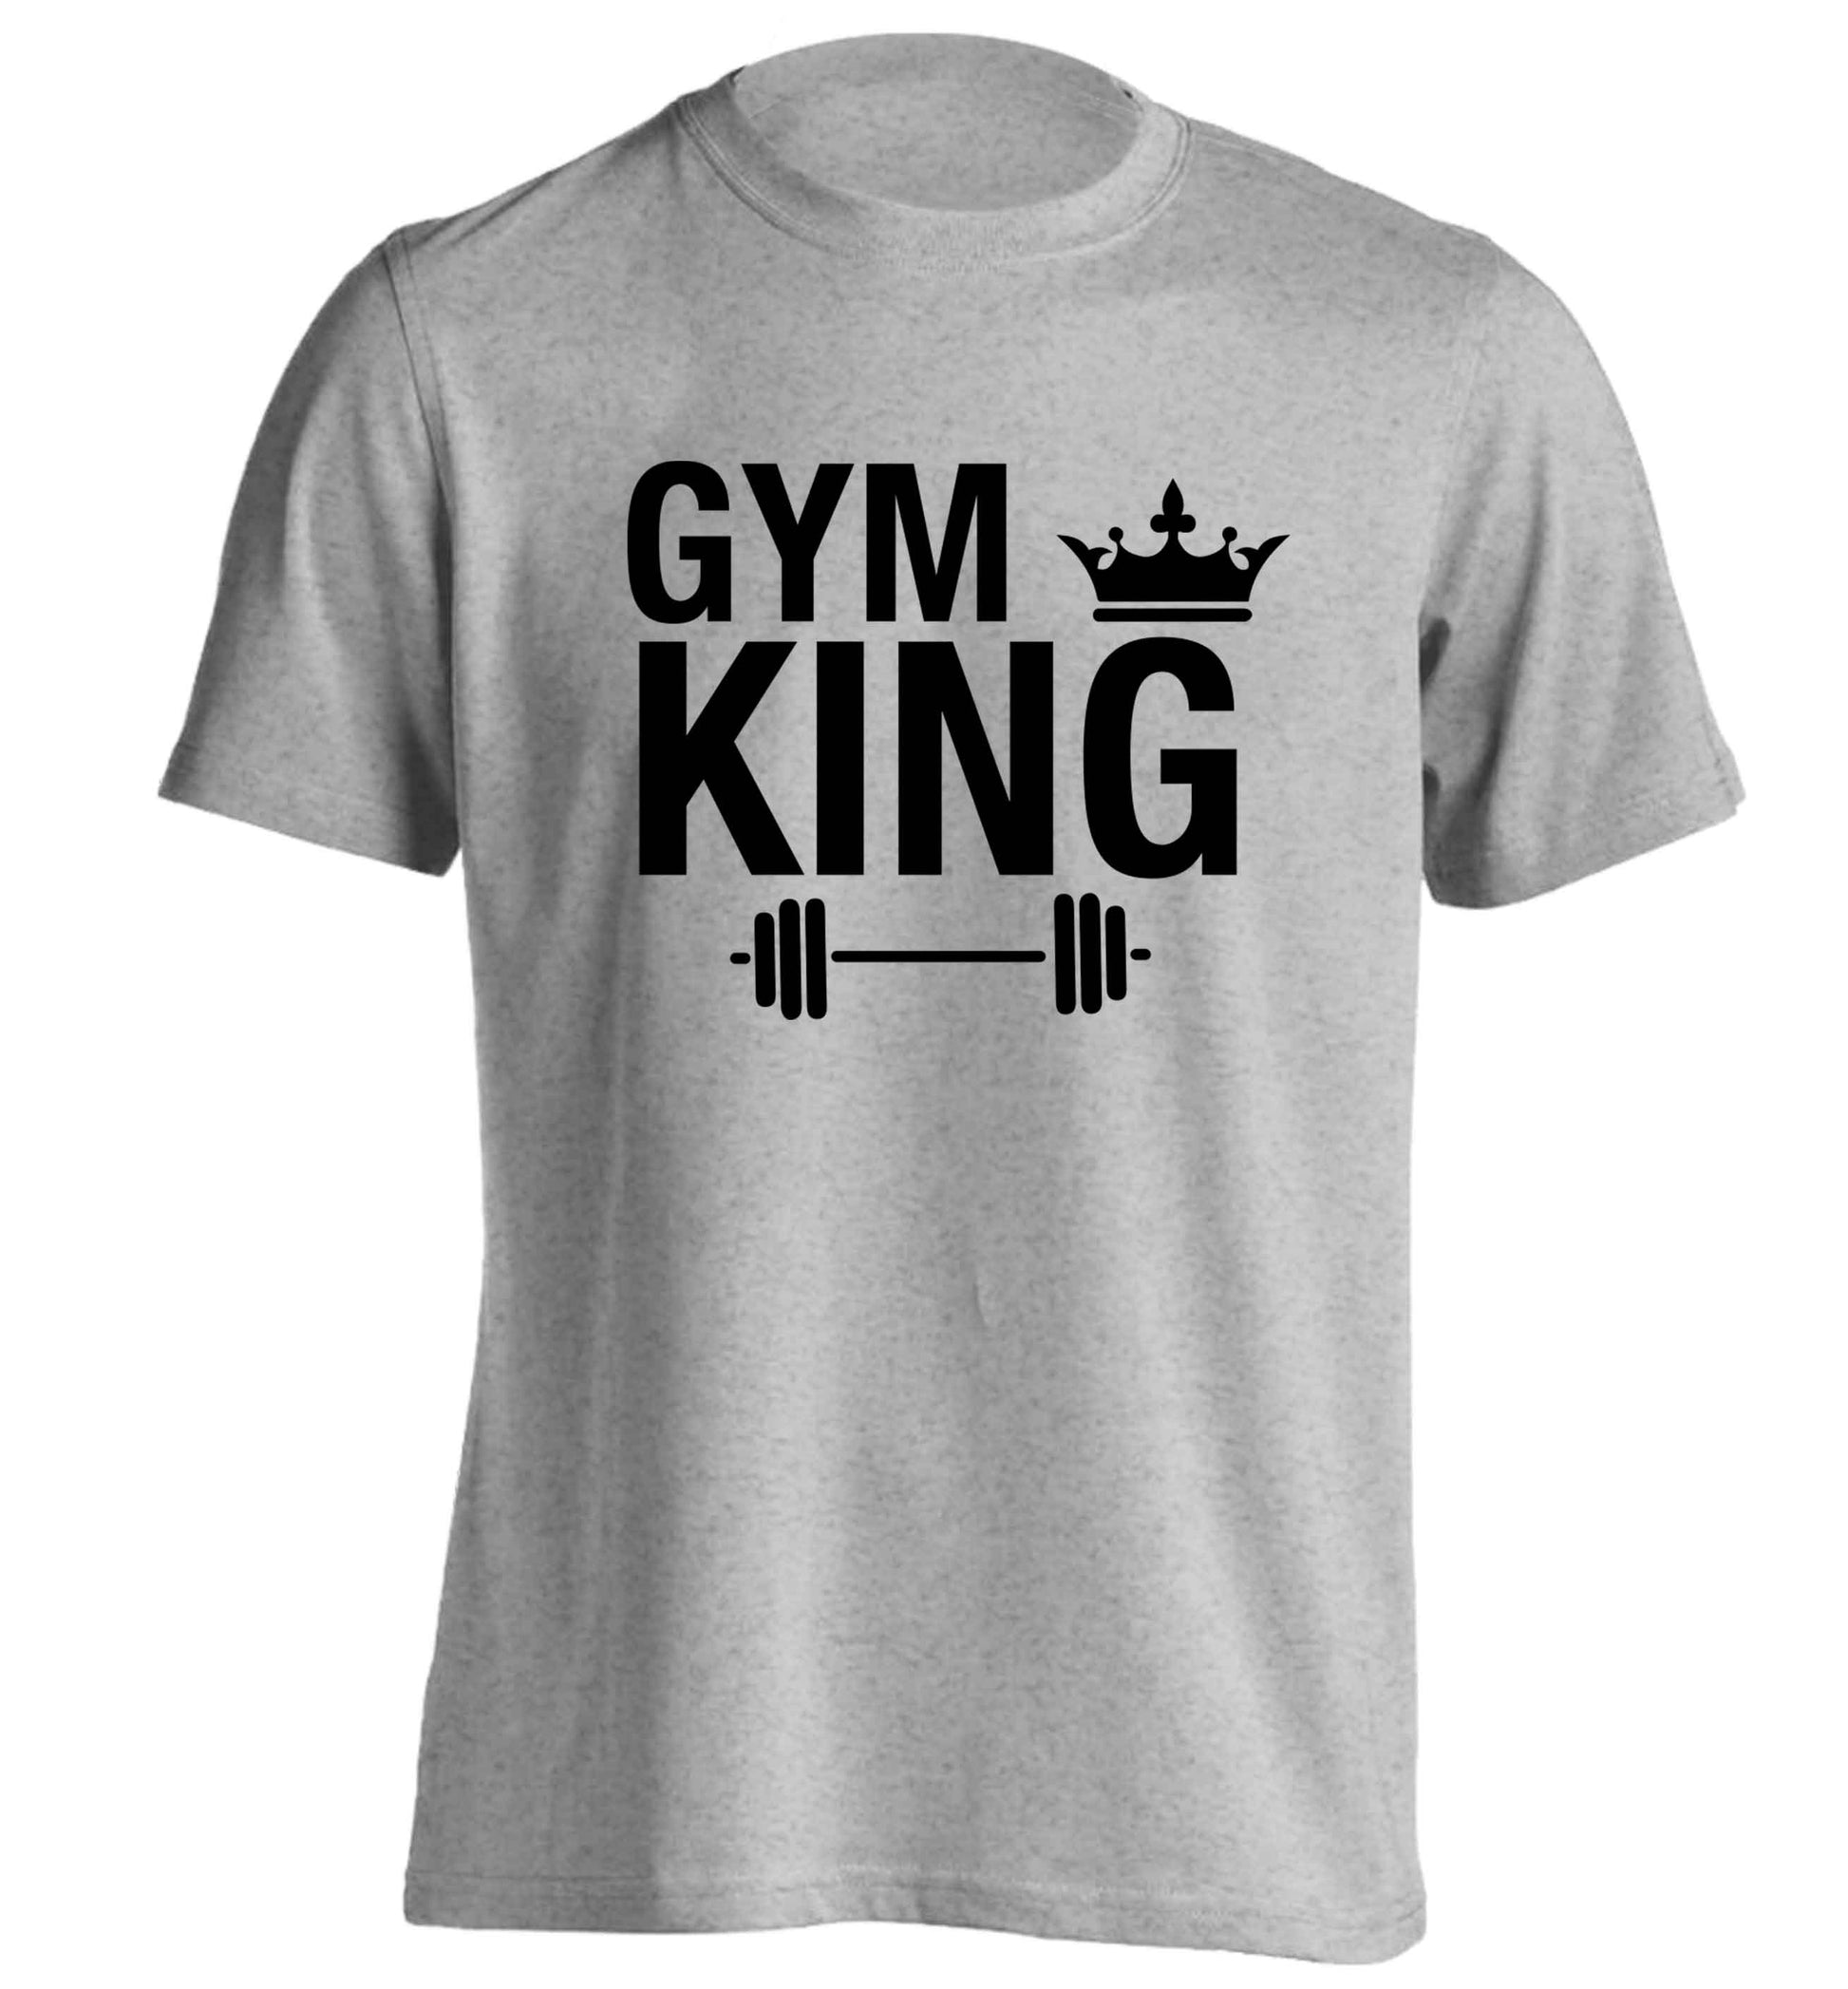 Gym king adults unisex grey Tshirt 2XL